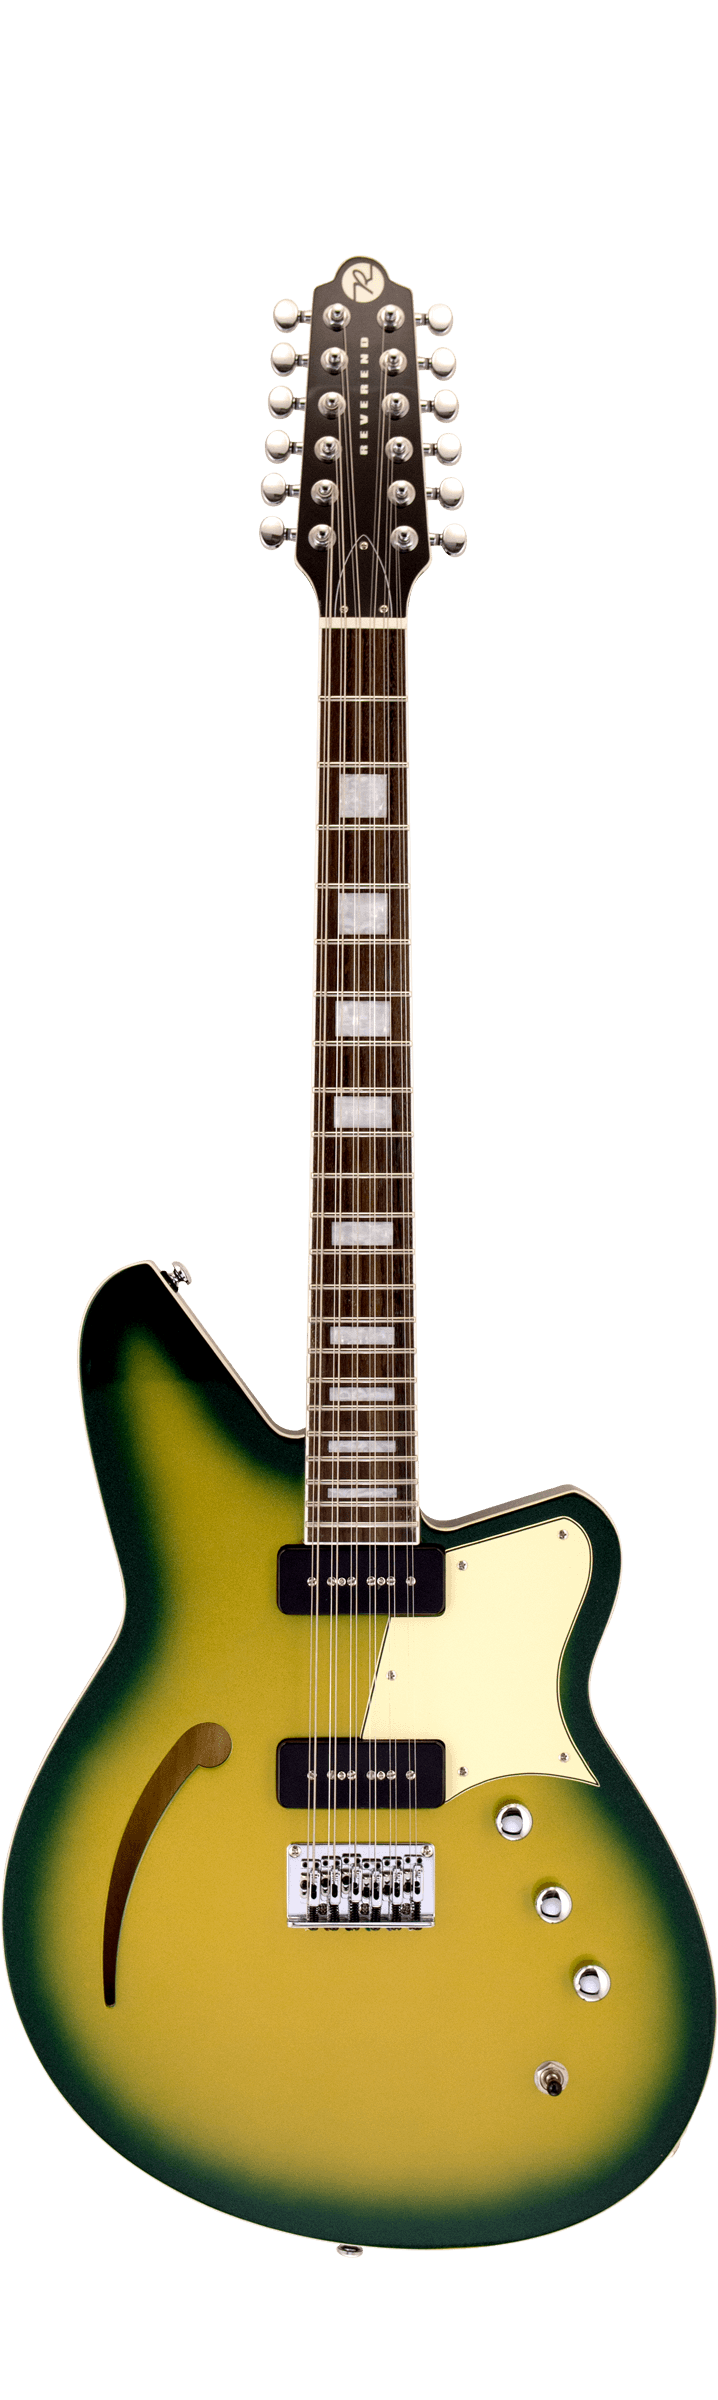 Guitare électrique semi-creuse Reverend AIRWAVE 12 cordes avec micros personnalisés (Citradelic Sunset)